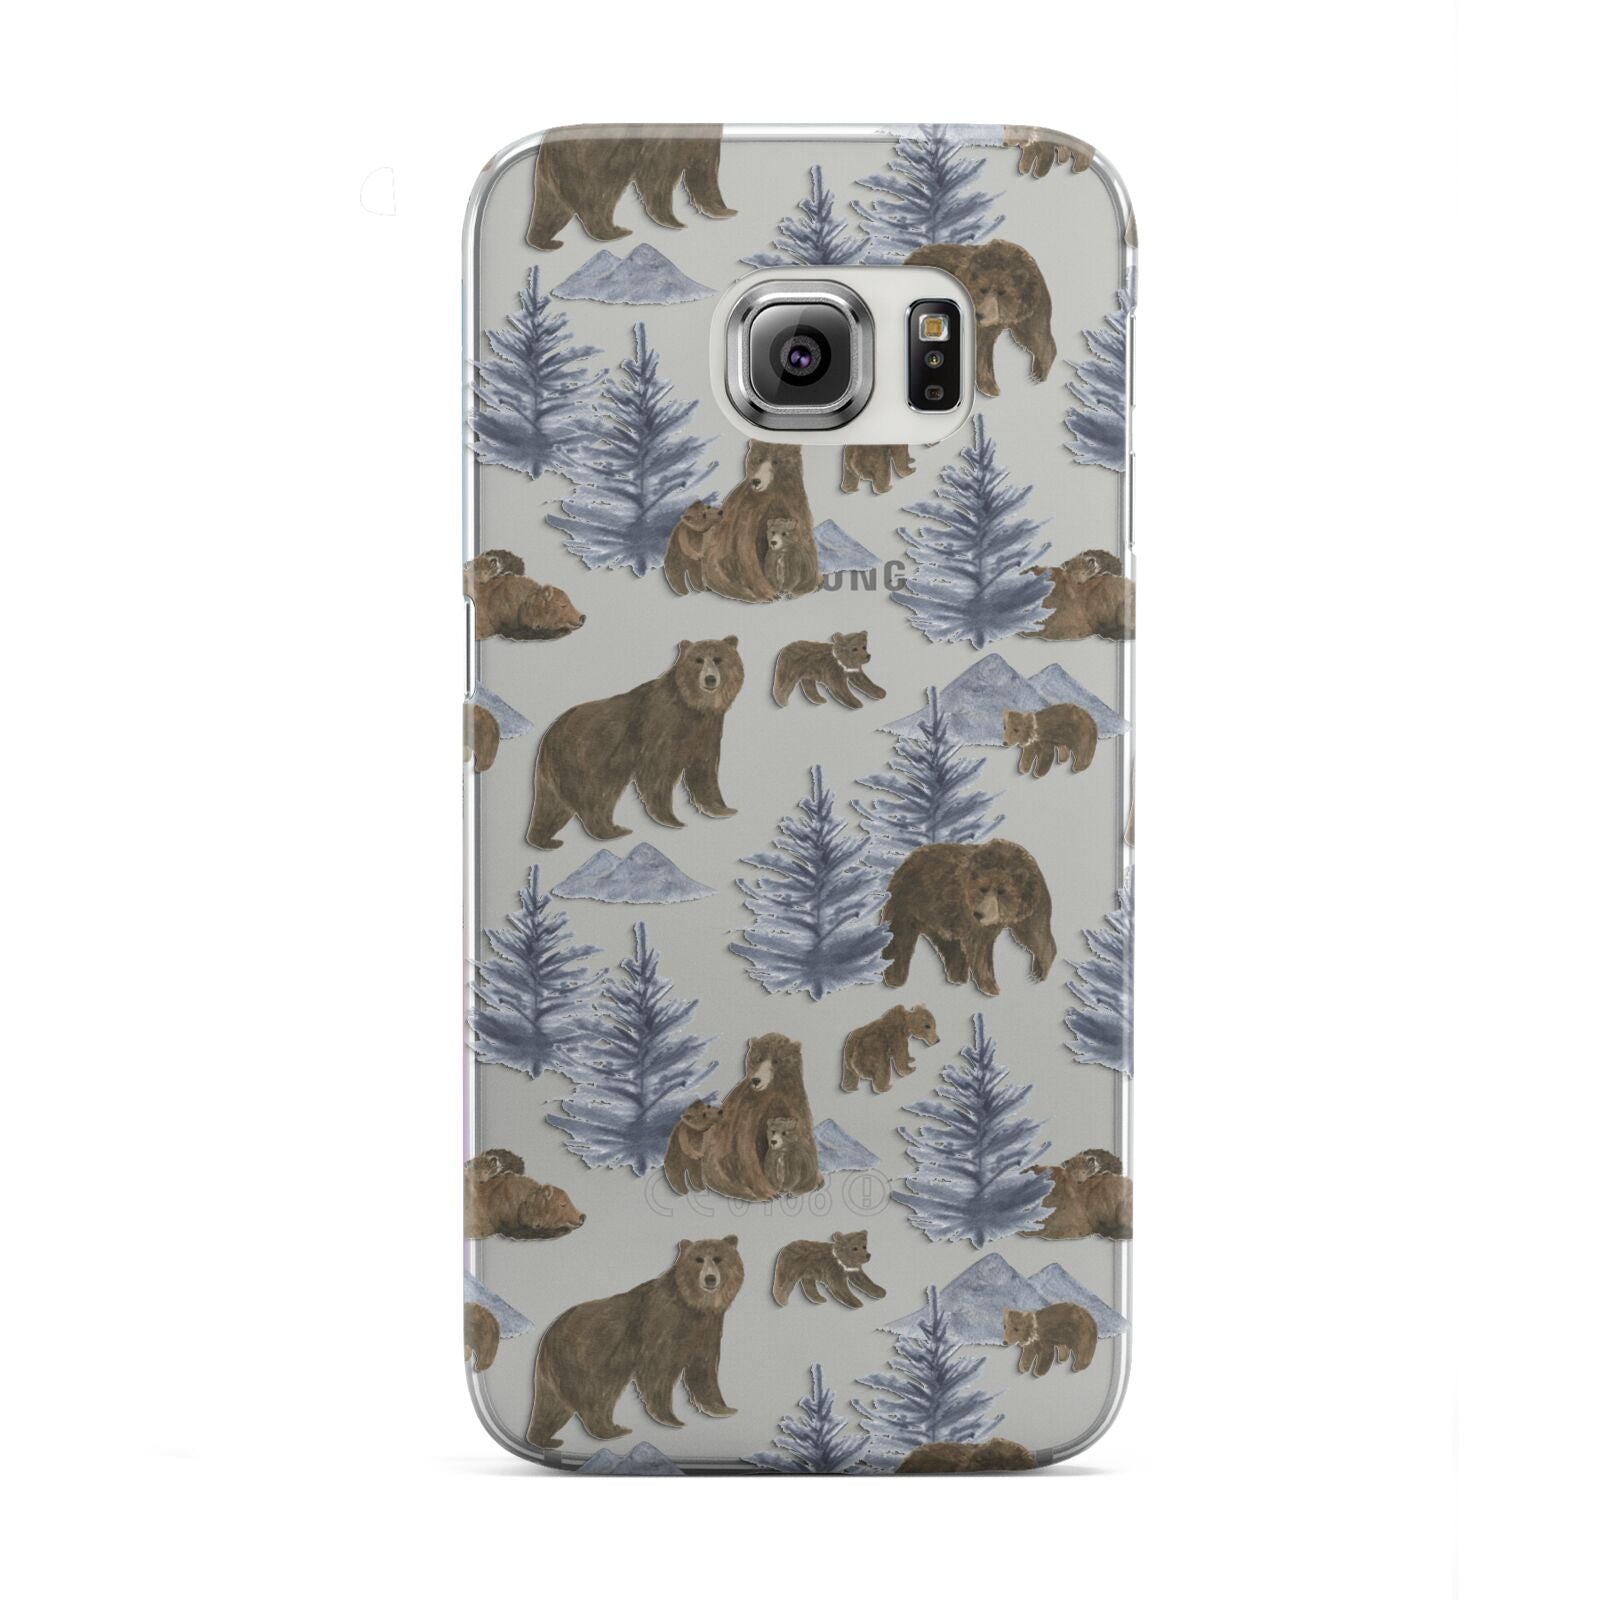 Brown Bear Samsung Galaxy S6 Edge Case